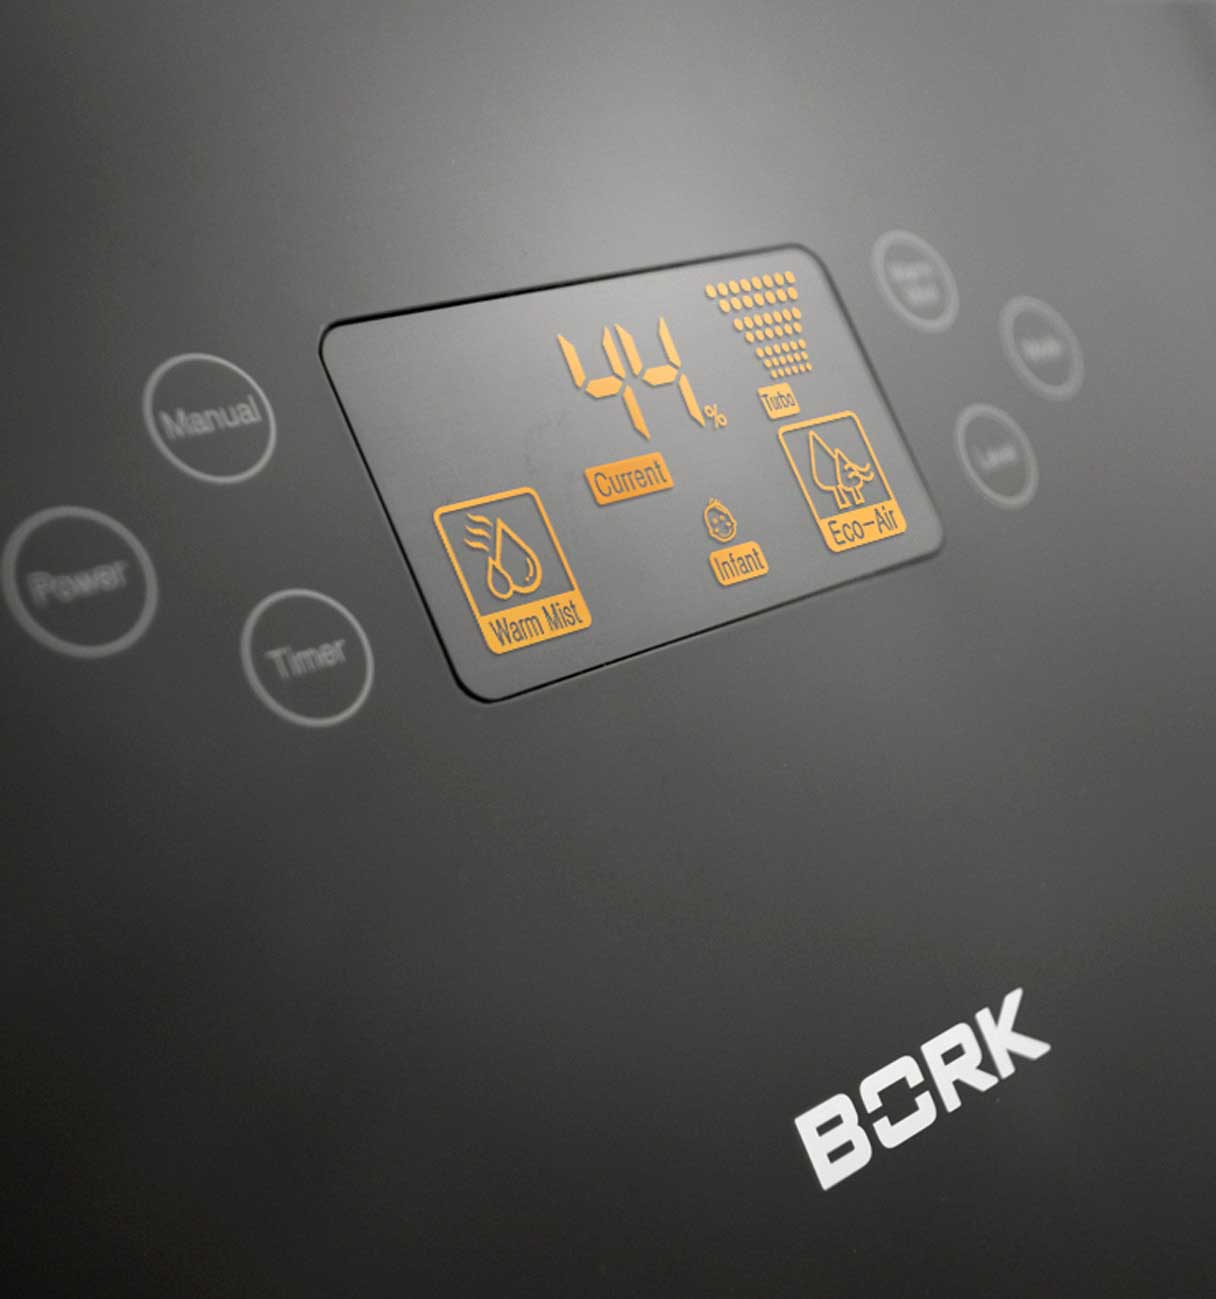 Увлажнитель-очиститель воздуха Bork Q710